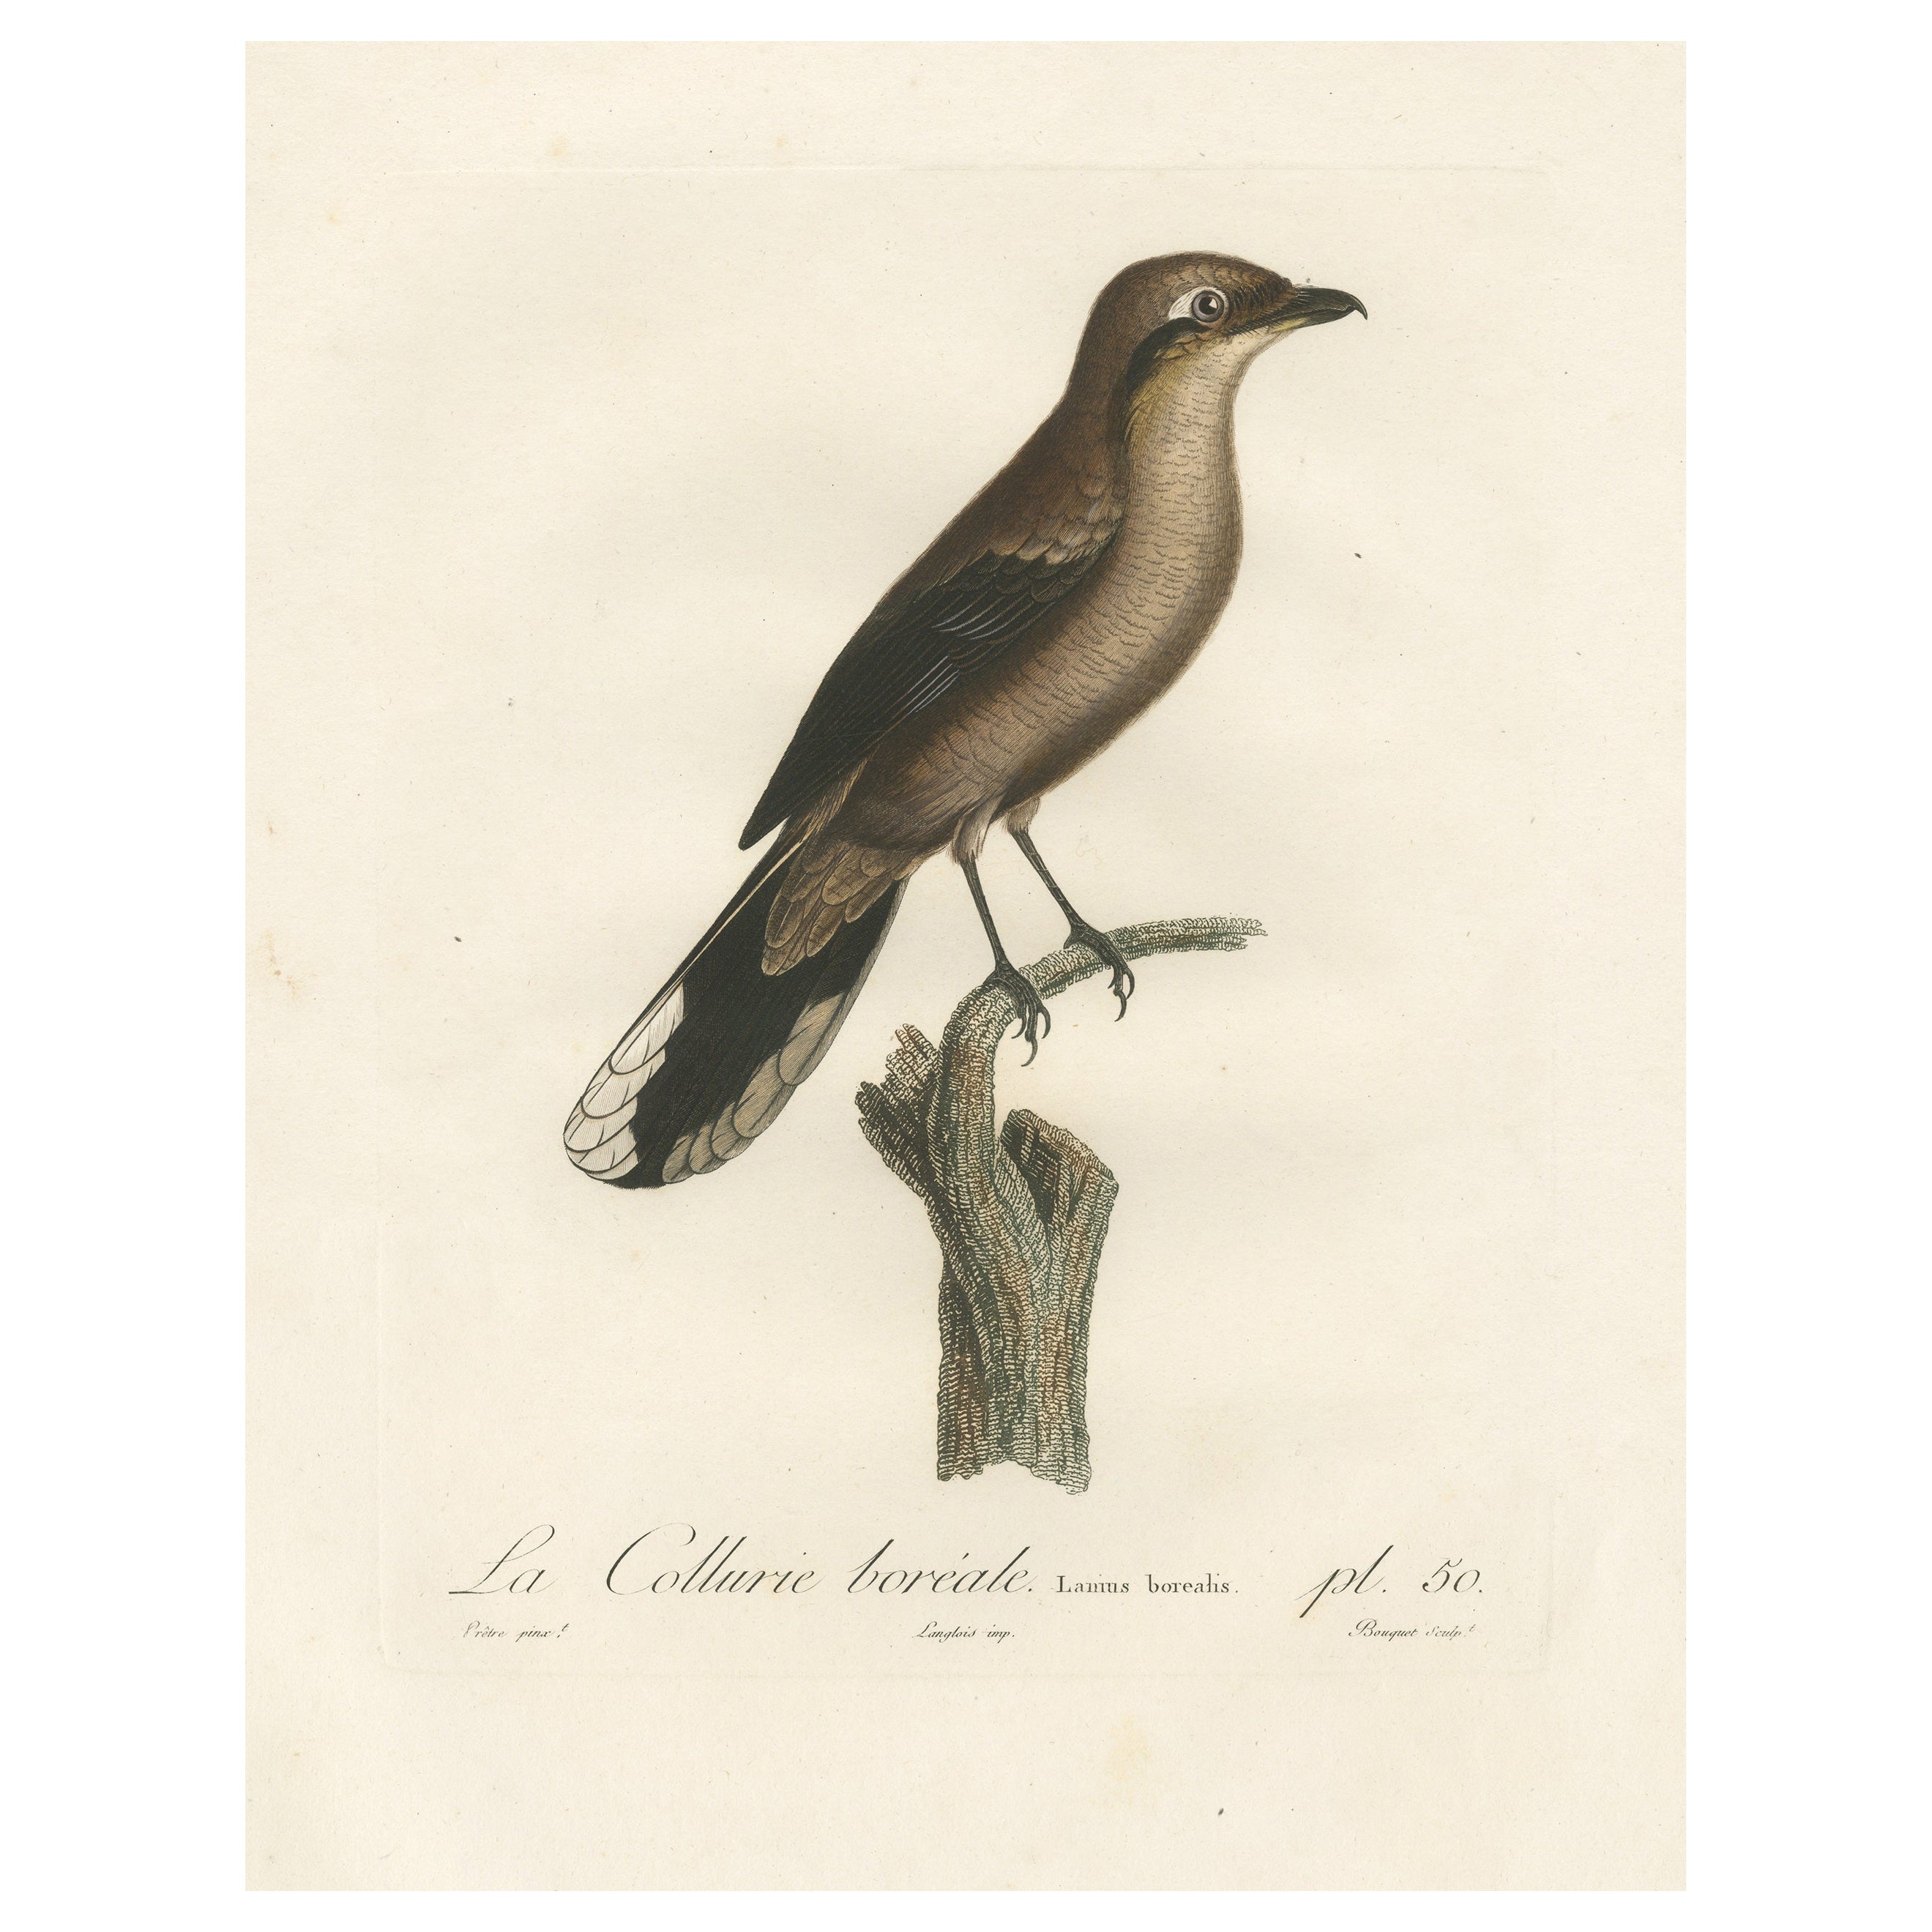 Grande étude ornithologique d'un sanctuaire du nord, réalisée à la main en 1807